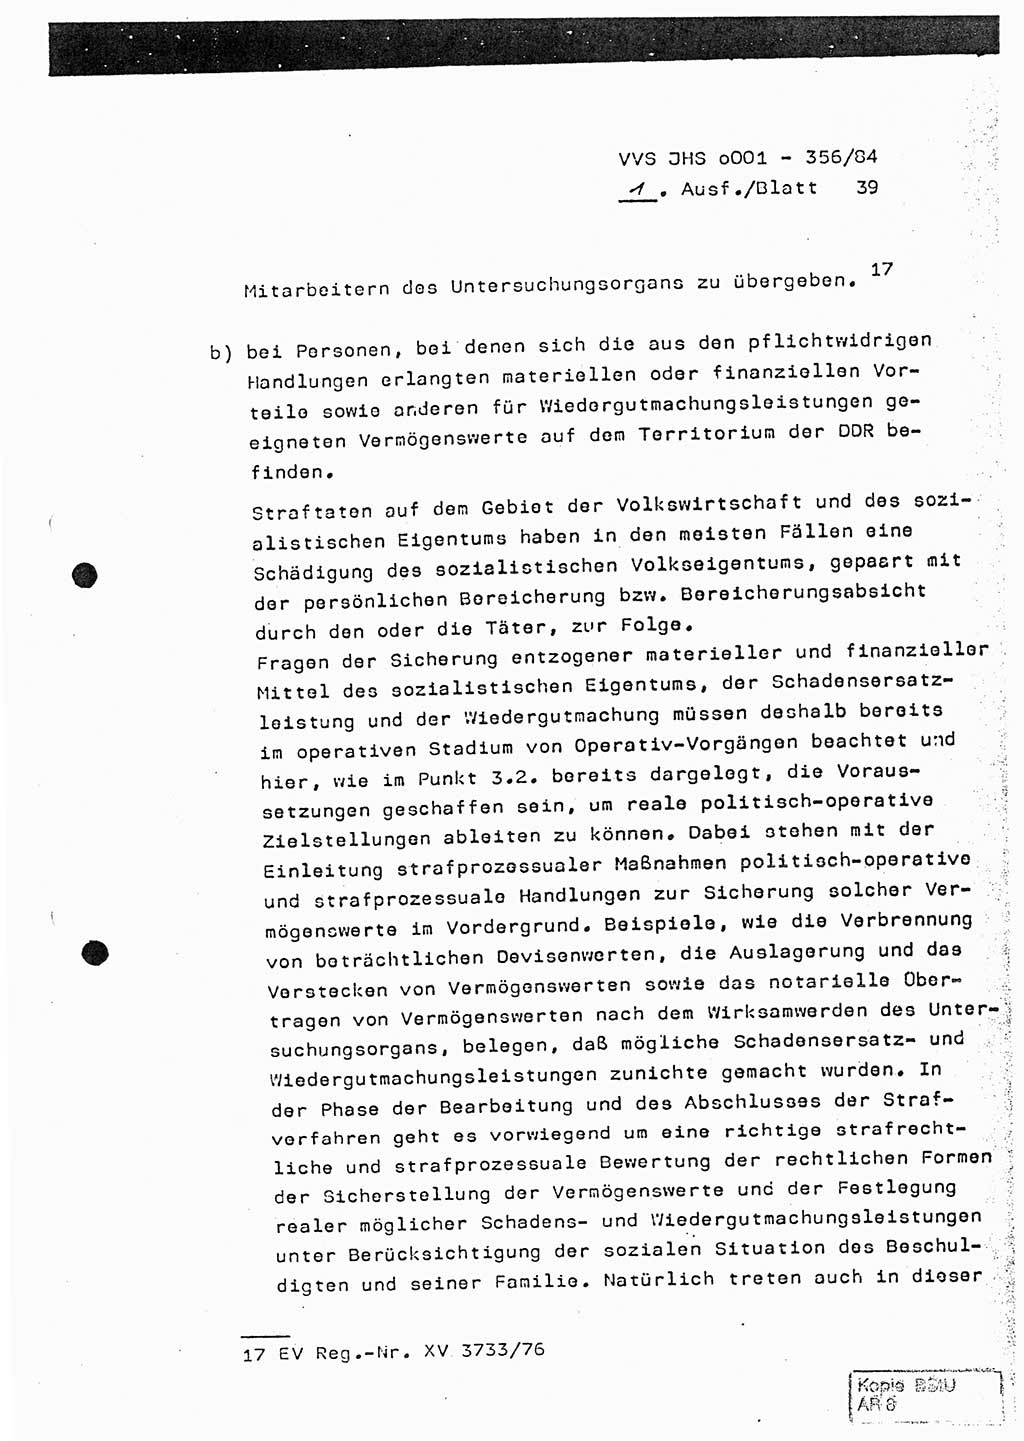 Diplomarbeit, Major Lutz Rahaus (HA Ⅸ/3), Ministerium für Staatssicherheit (MfS) [Deutsche Demokratische Republik (DDR)], Juristische Hochschule (JHS), Vertrauliche Verschlußsache (VVS) o001-356/84, Potsdam 1984, Seite 39 (Dipl.-Arb. MfS DDR JHS VVS o001-356/84 1984, S. 39)